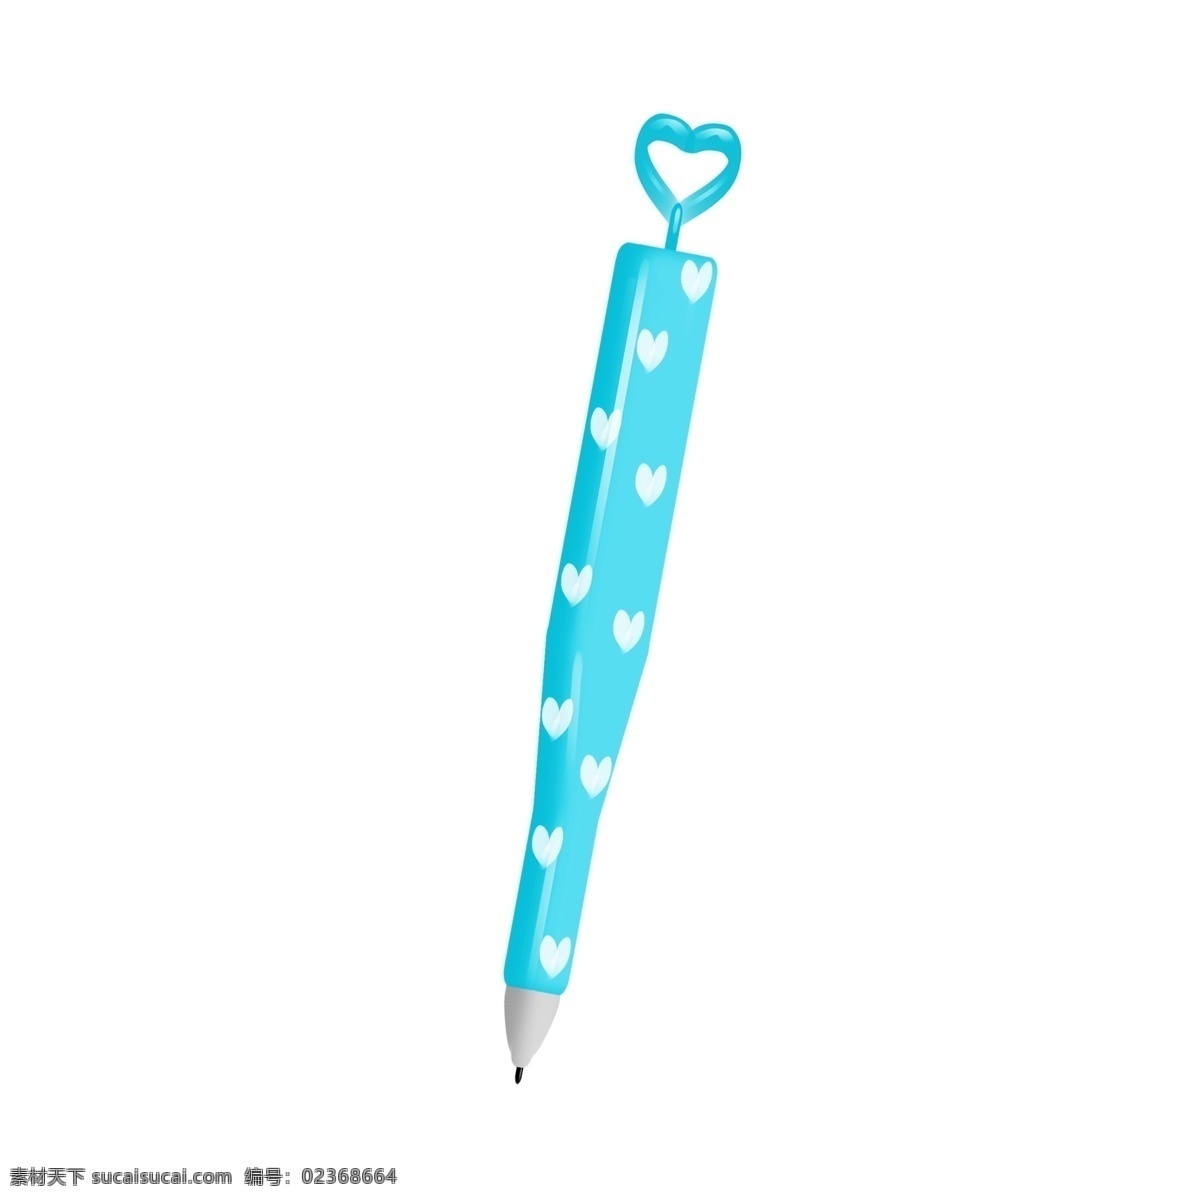 创意 圆珠笔 插图 创意的圆珠笔 学习的工具 蓝色的圆珠笔 蓝色的中性笔 文具 白色的心形